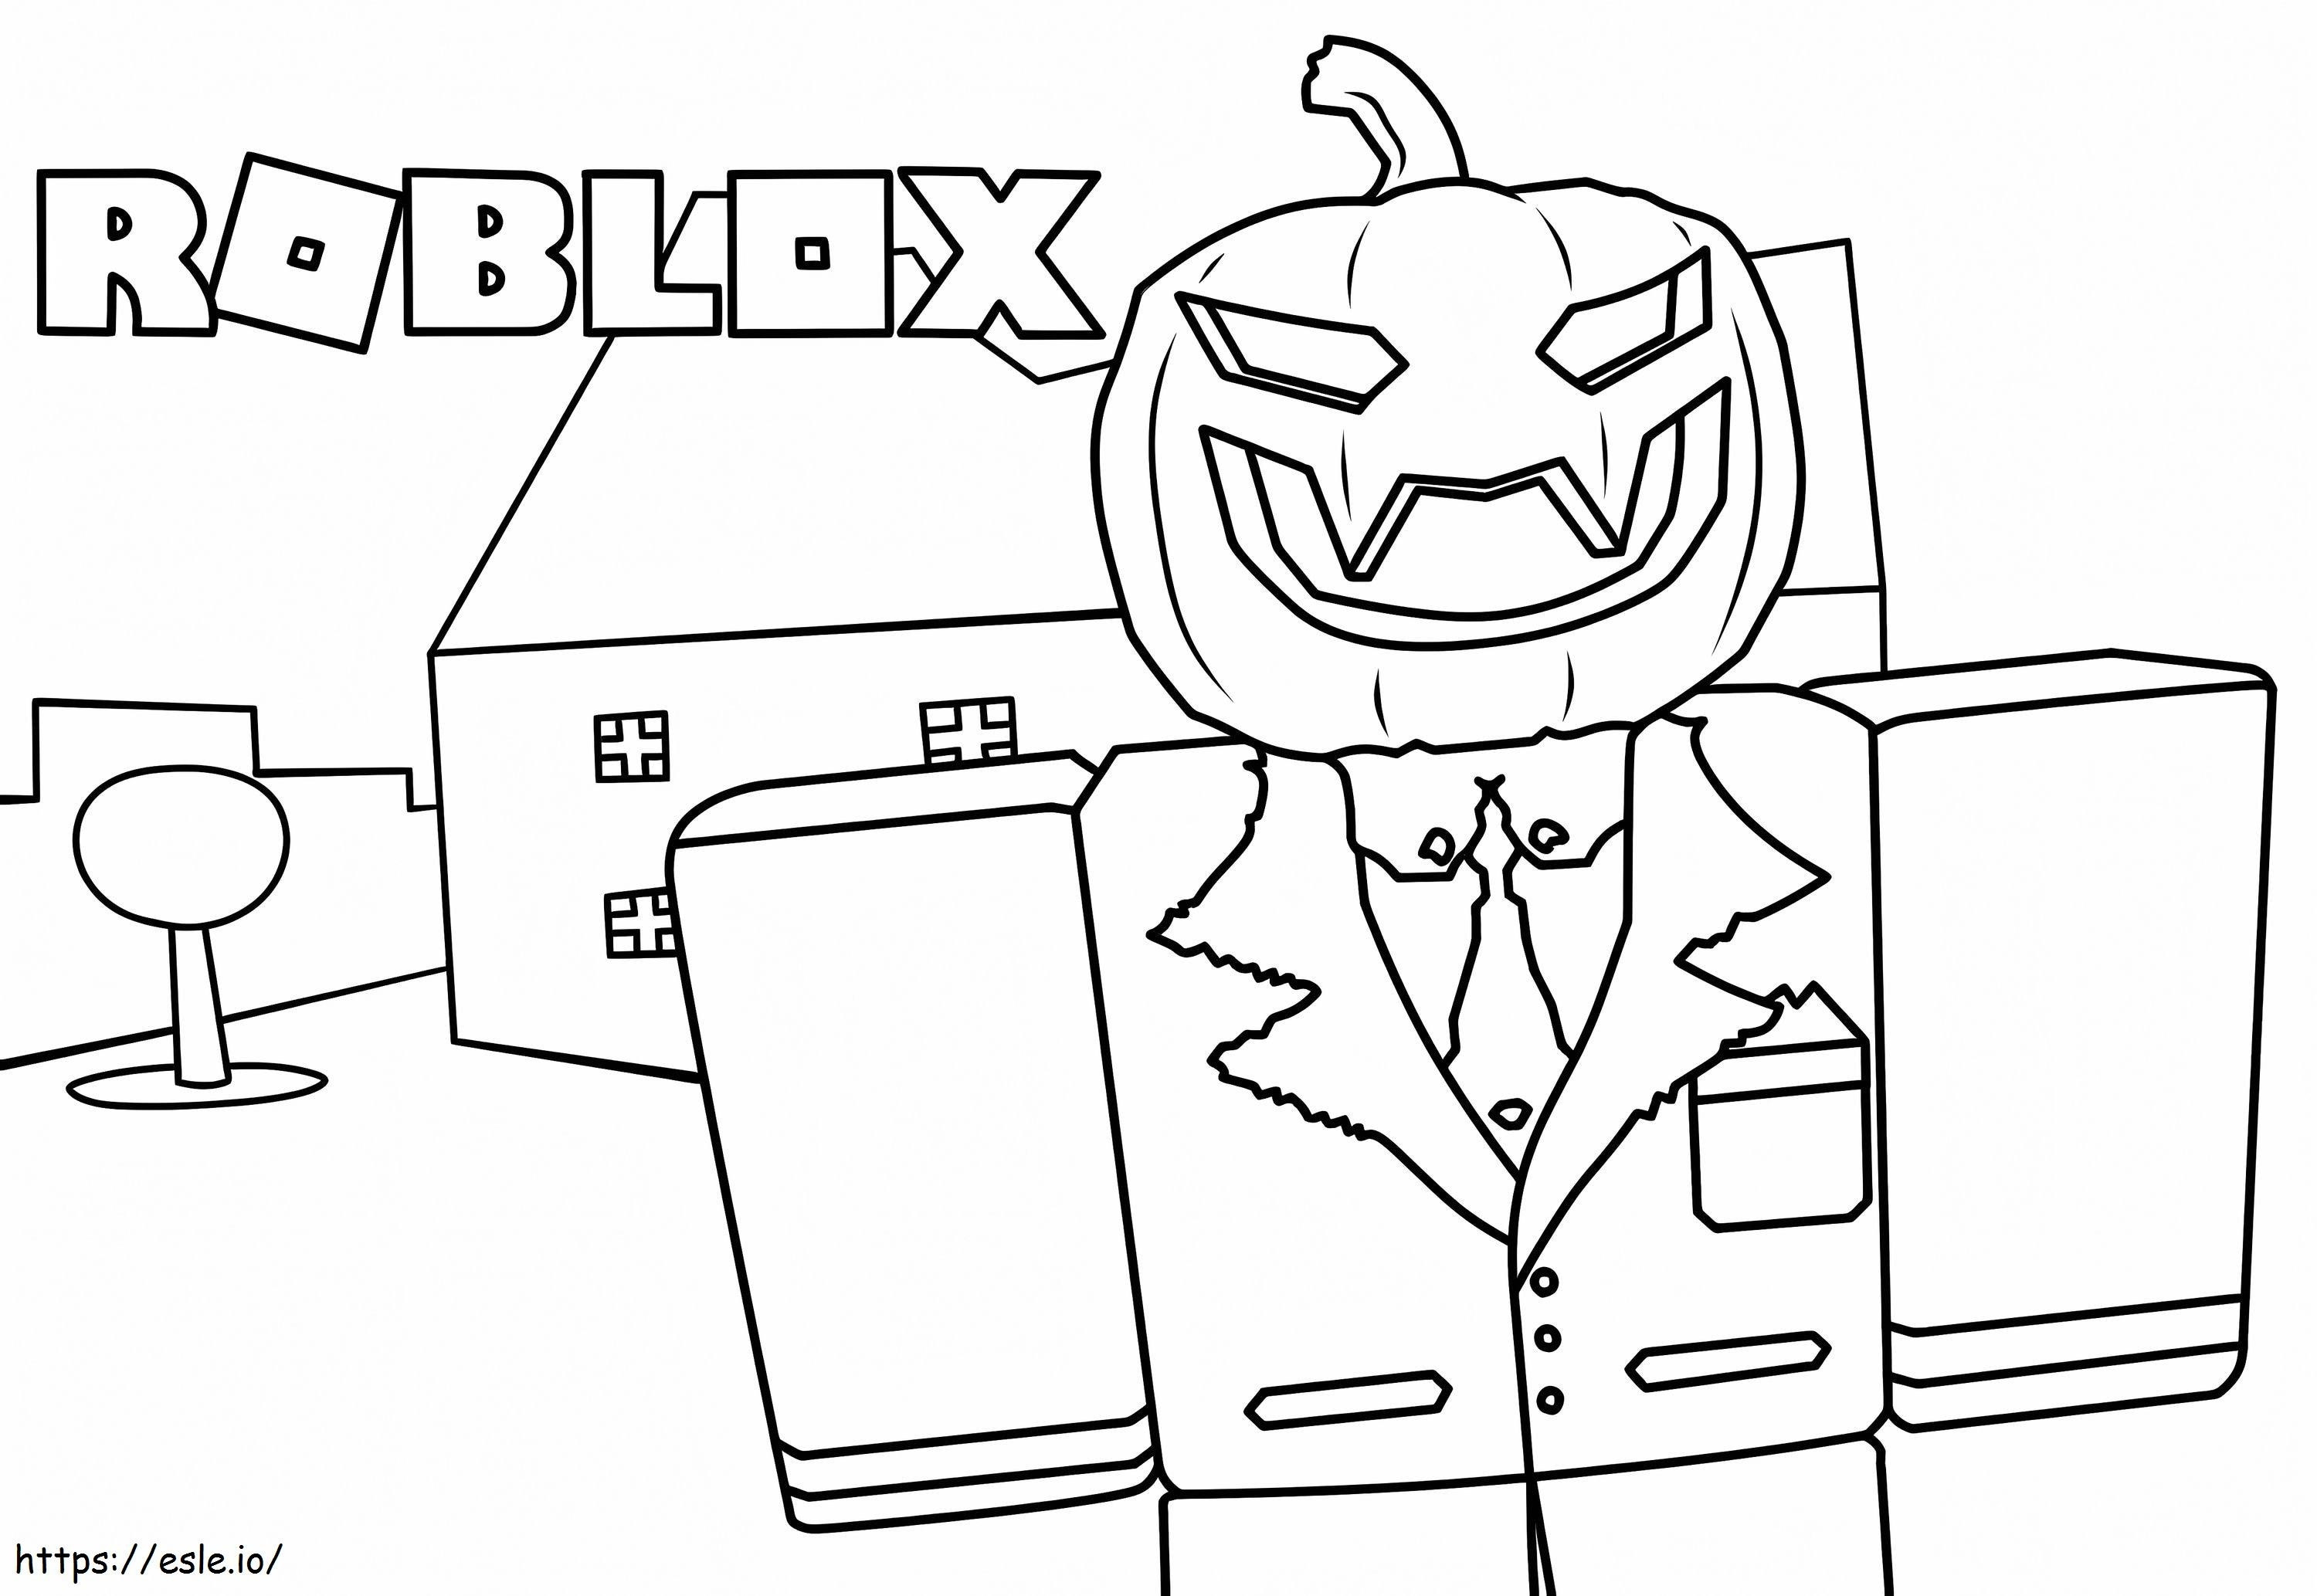 Roblox Das Halloween ausmalbilder